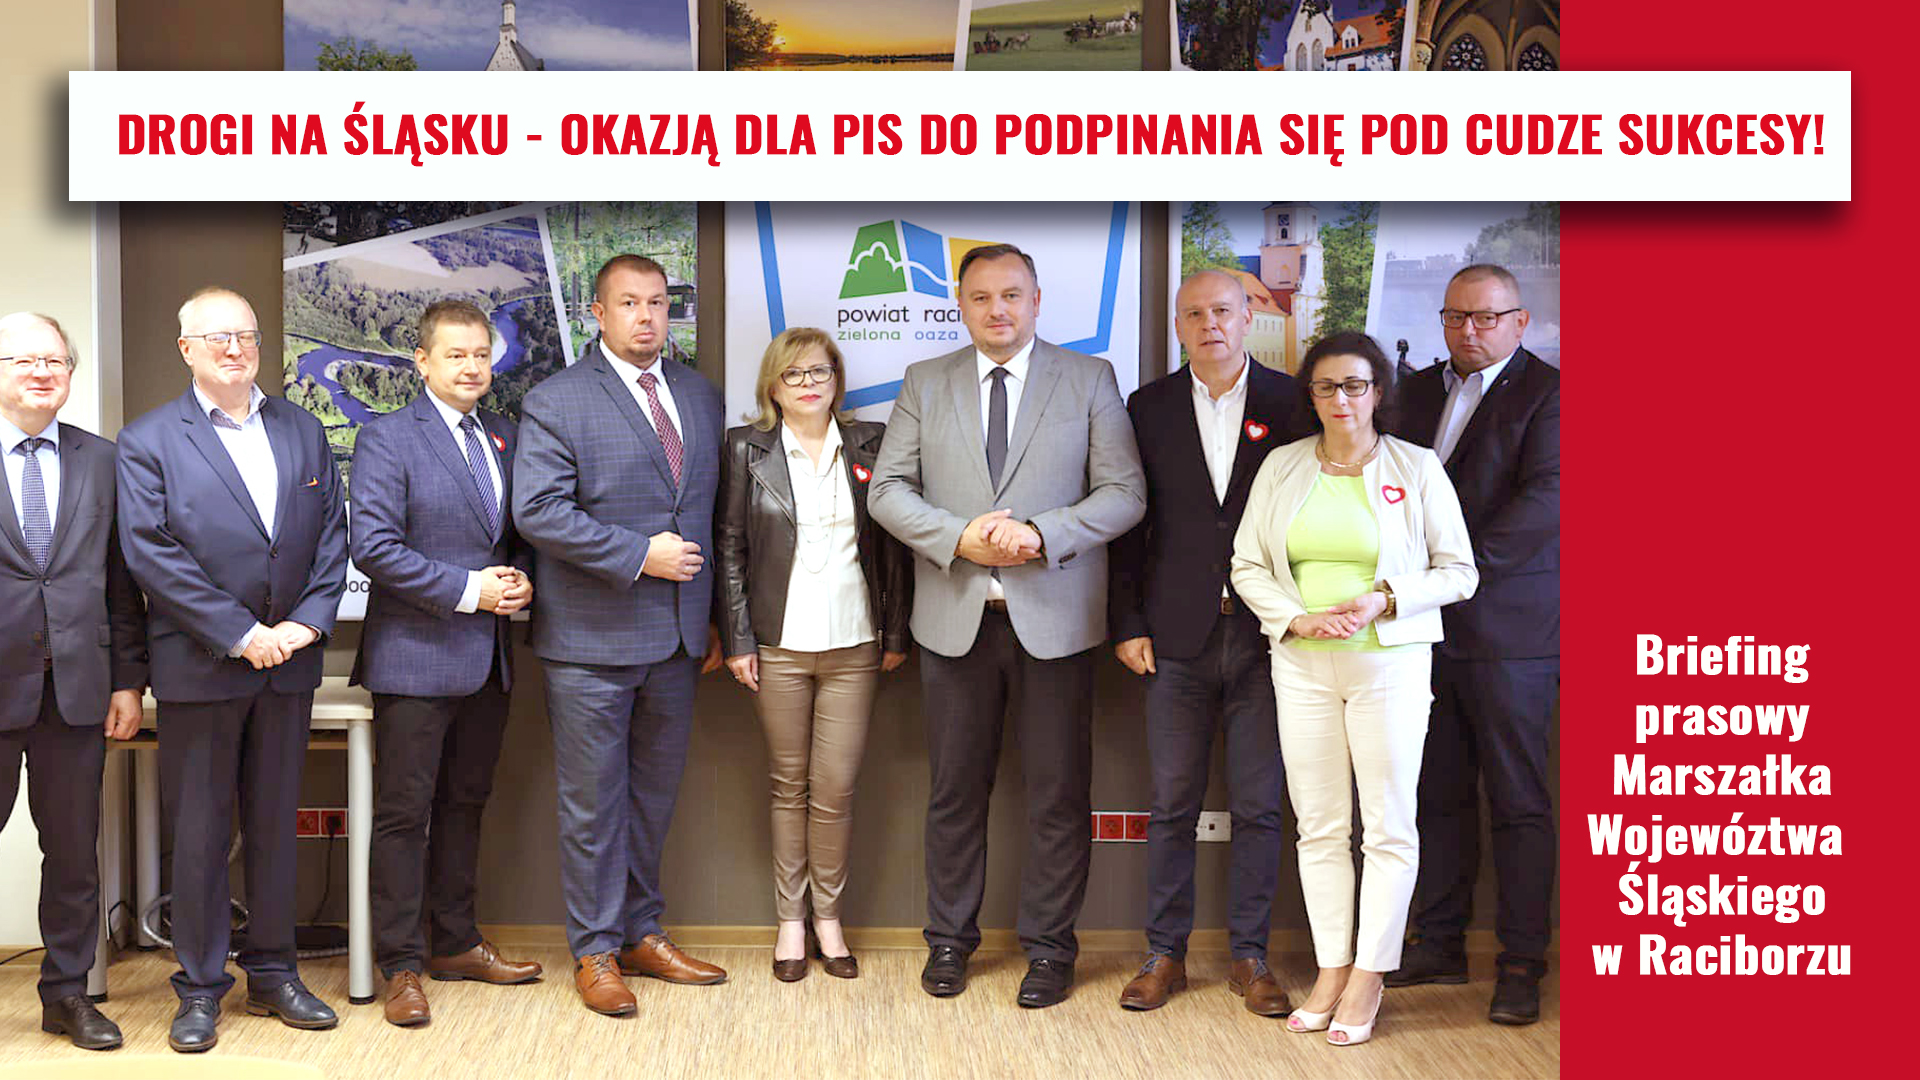 To za rządów PO w Województwie Śląskim rozpoczęto program budowy dróg, które dziś są oddawane do użytku mieszkańcom regionu.